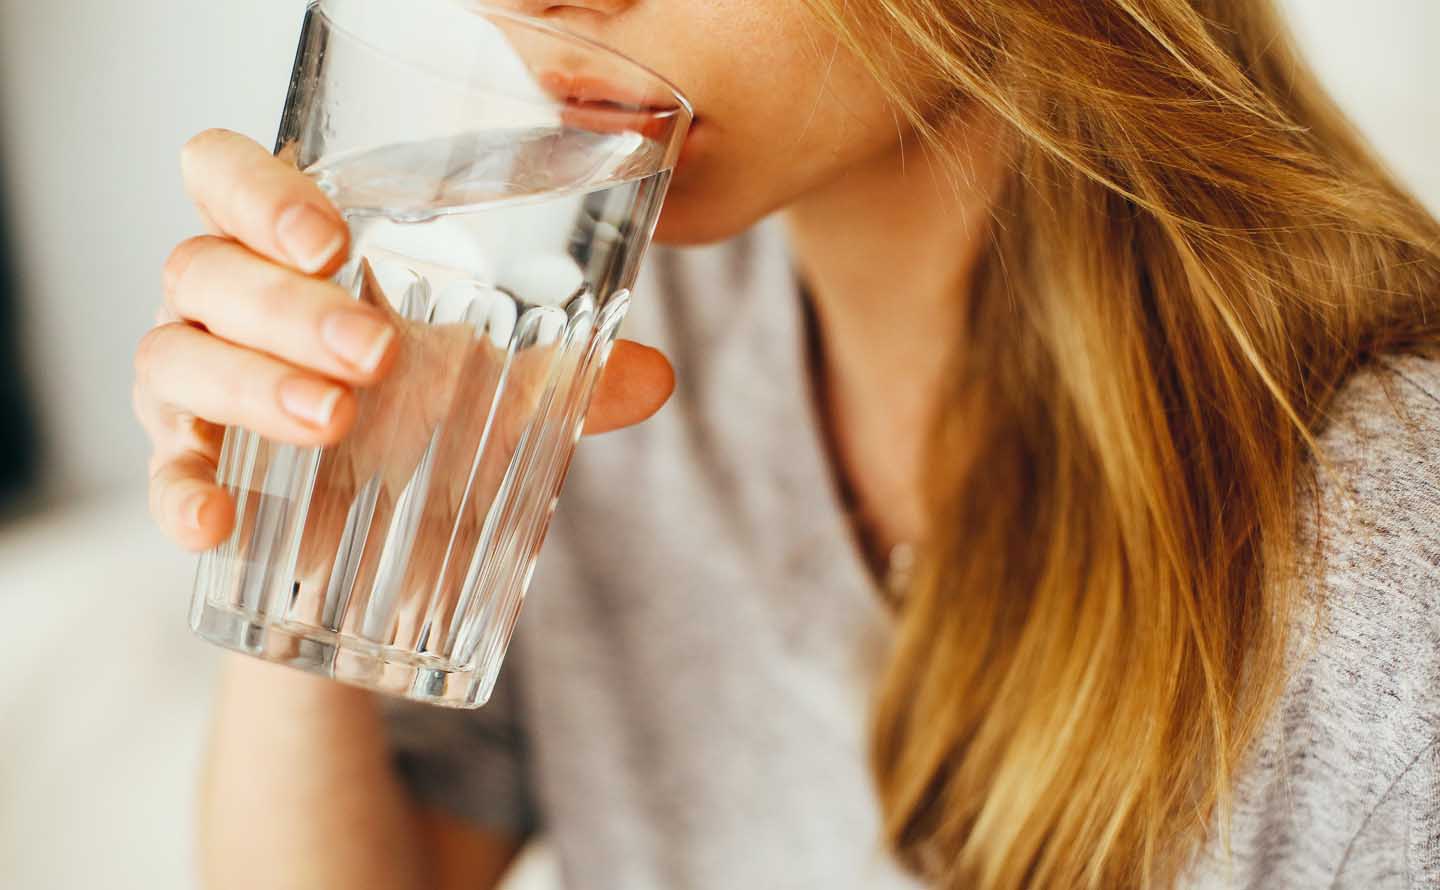 Beber água pode evitar cálculos renais - Photo by Daria Shevtsova from Pexels